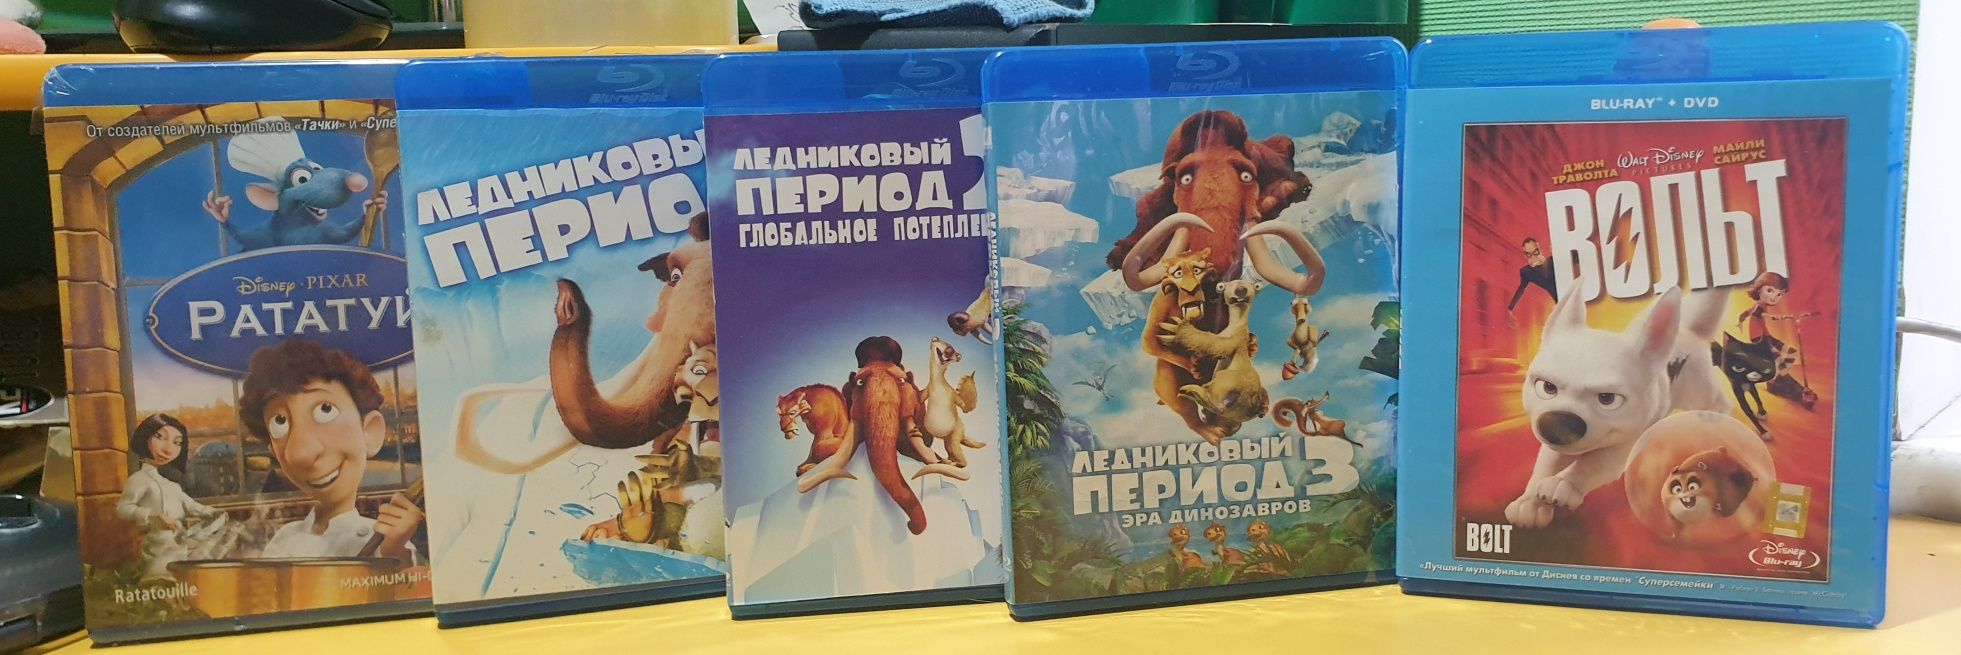 Blu ray мультфільми від Дісней Рататуй, Вольт,Льодовиковий період 1,2,